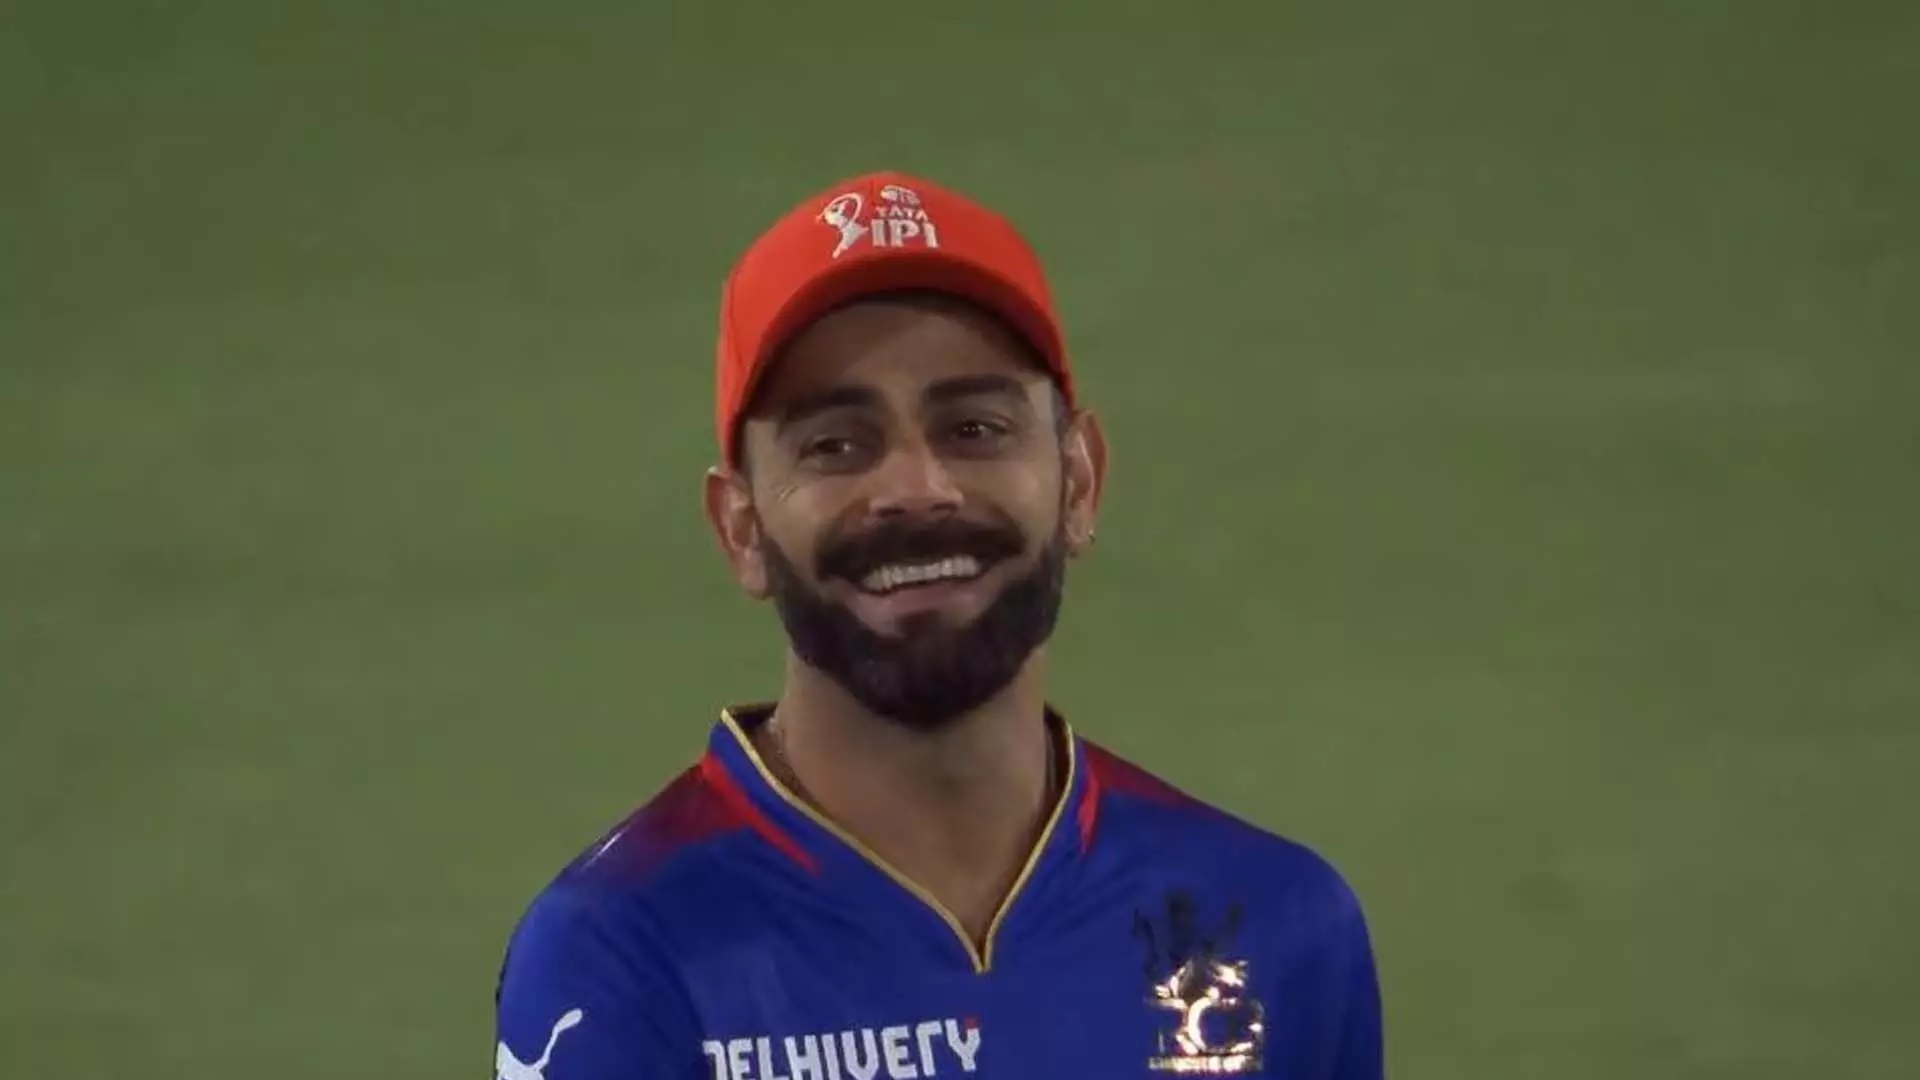 आरसीबी ने 6 मैचों की जीत का सिलसिला खत्म किया तो विराट कोहली की मुस्कुराहट चमक उठी